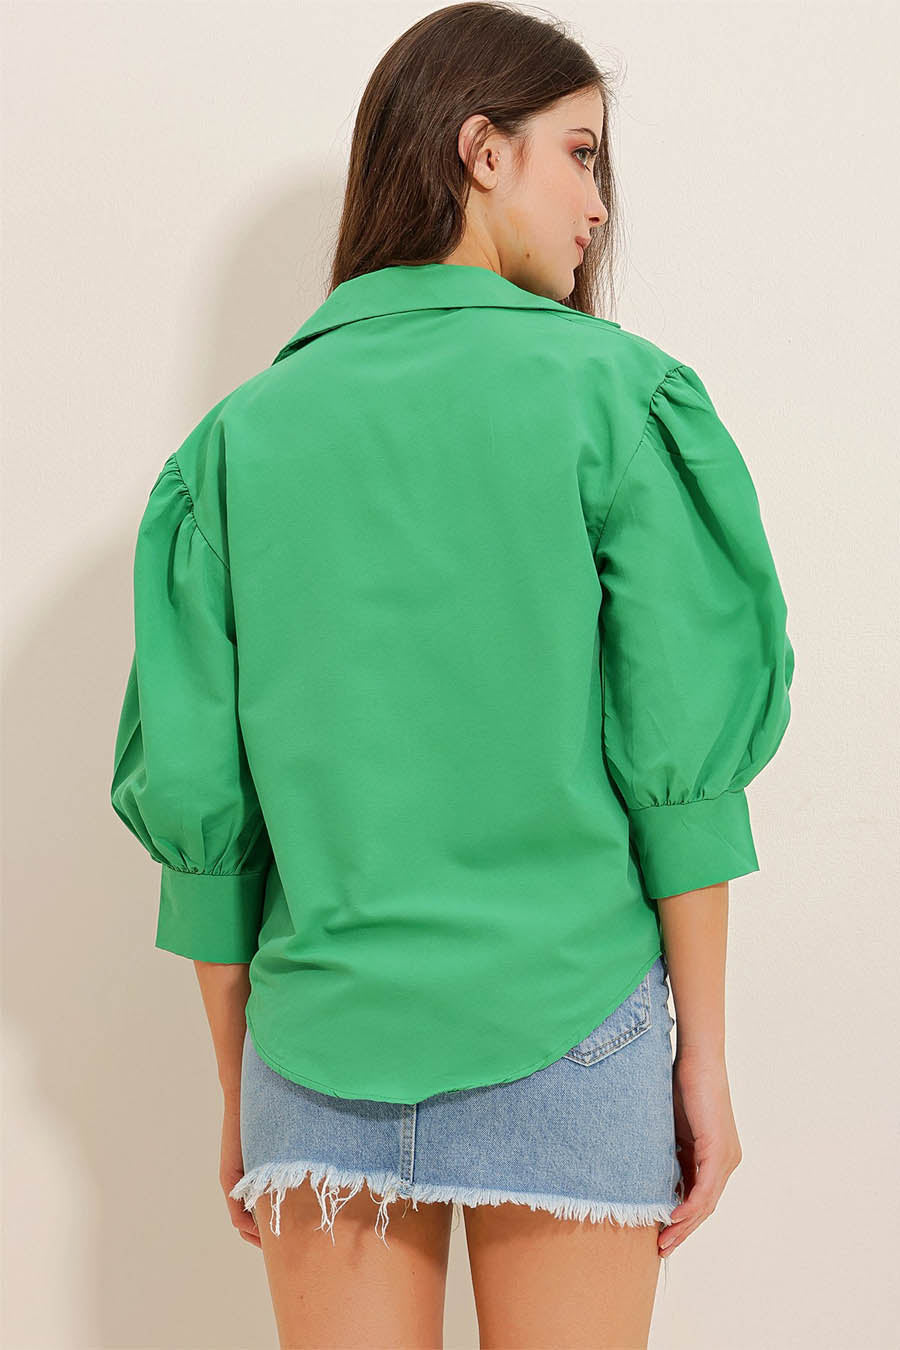 Дамска риза Maryam, Зелен 6